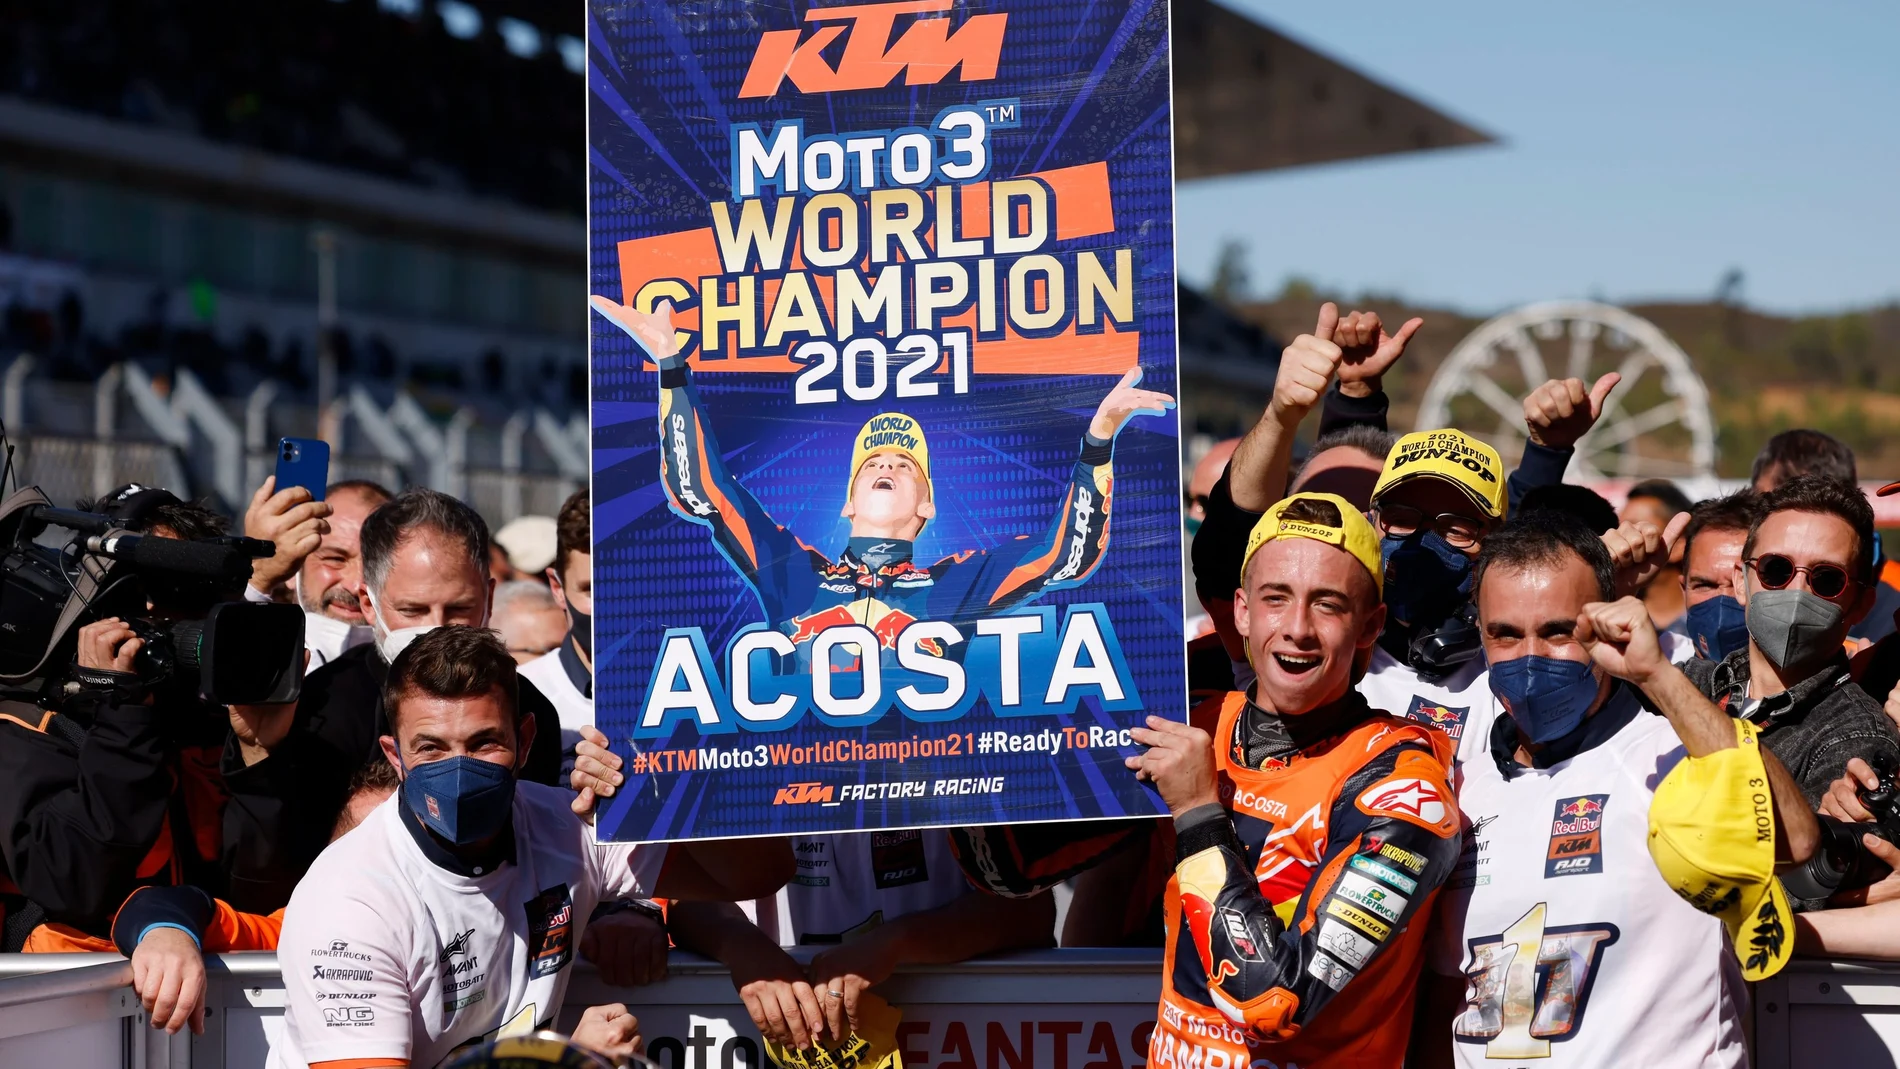 Pedro Acosta enseña el cartel en el que se muestra que es campeón del mundo de Moto3